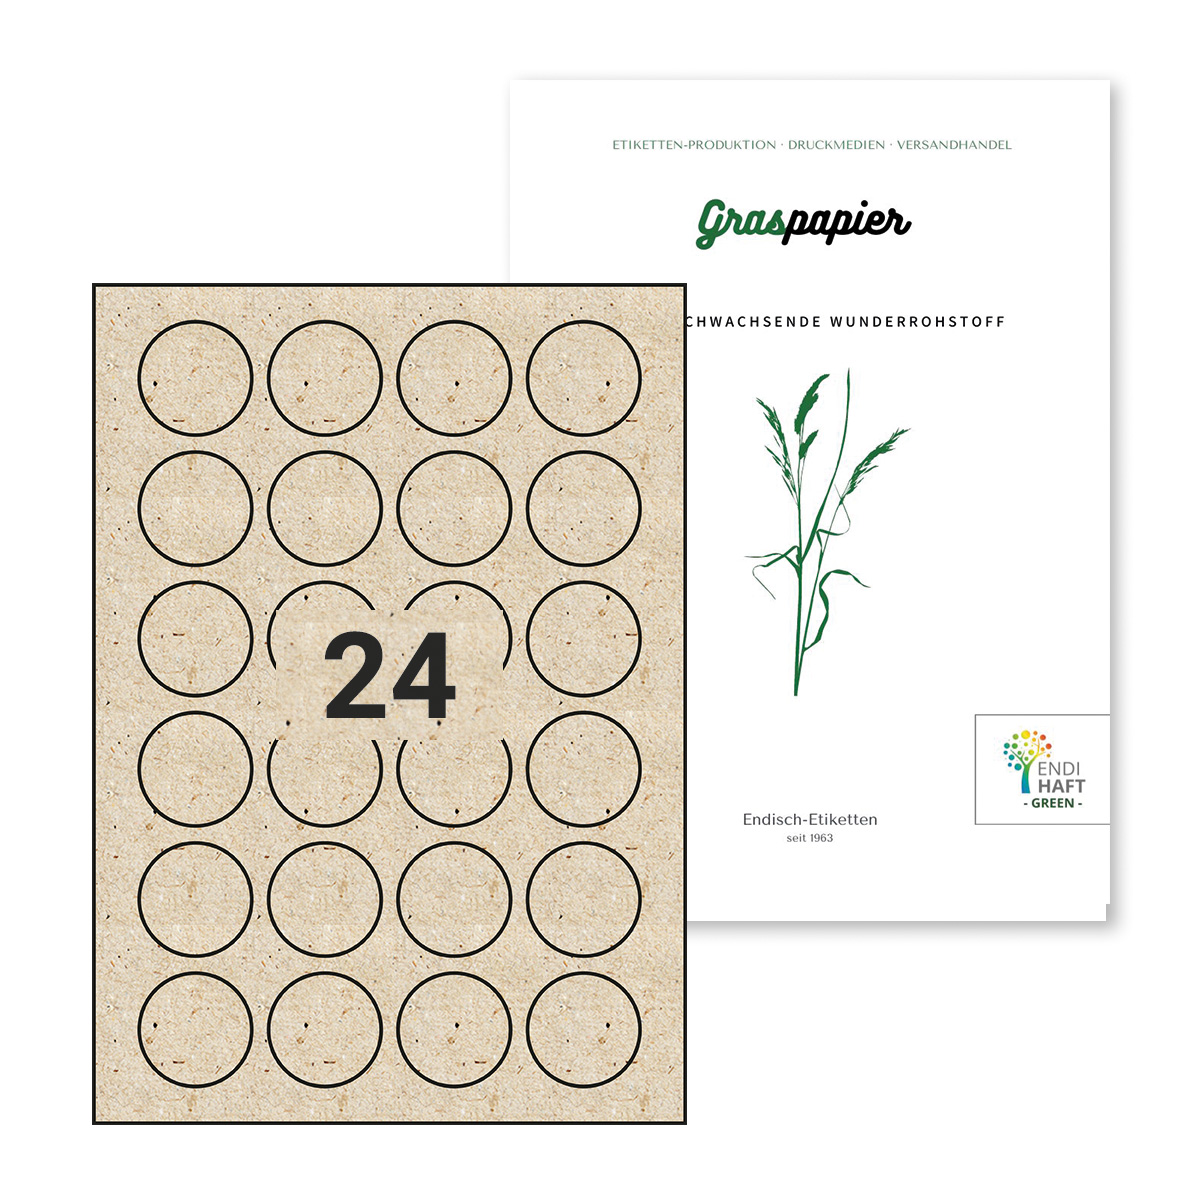 ENDI-HAFT Graspapier-Etiketten, 40 mm rund, 240 Etiketten, 10 Blatt DIN A4 / Pack